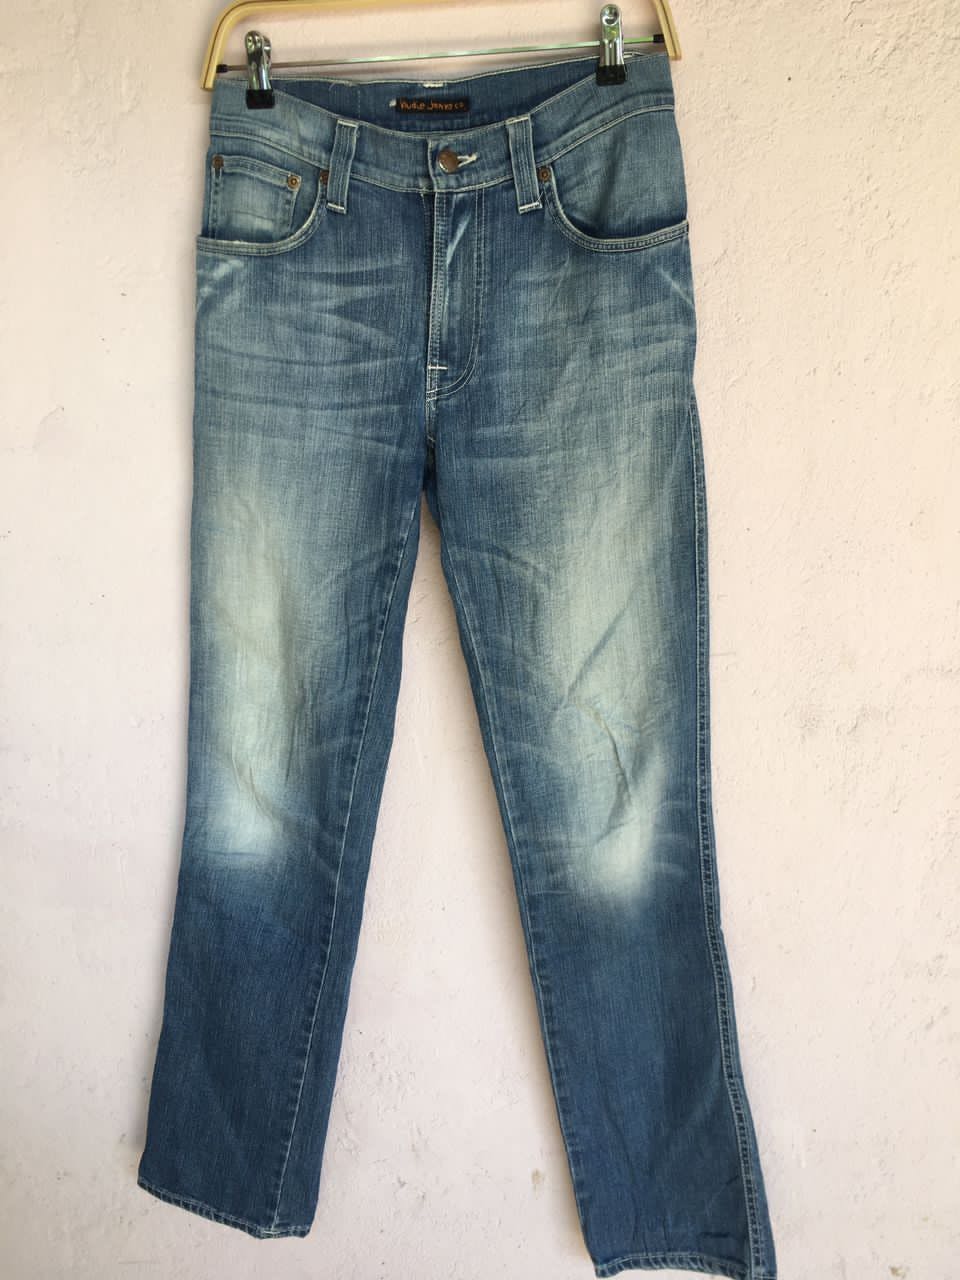 Nudie jeans.co Denim Slim jeans Men’s Pants made in Italy - 1